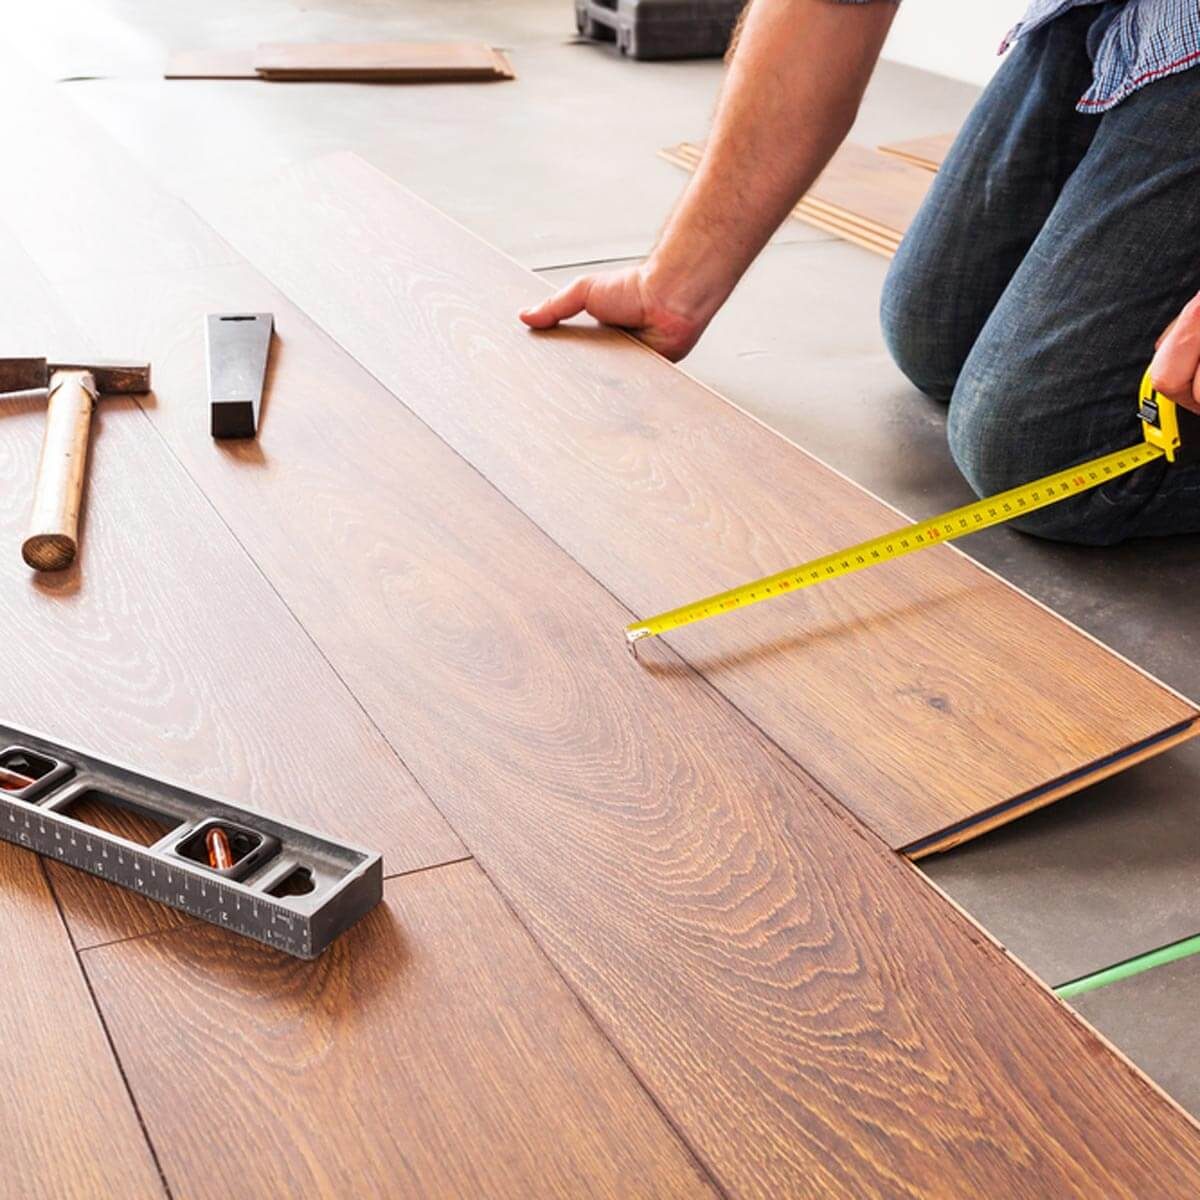 85 Cheap Wood floor treatment options for Bathroom Tiles